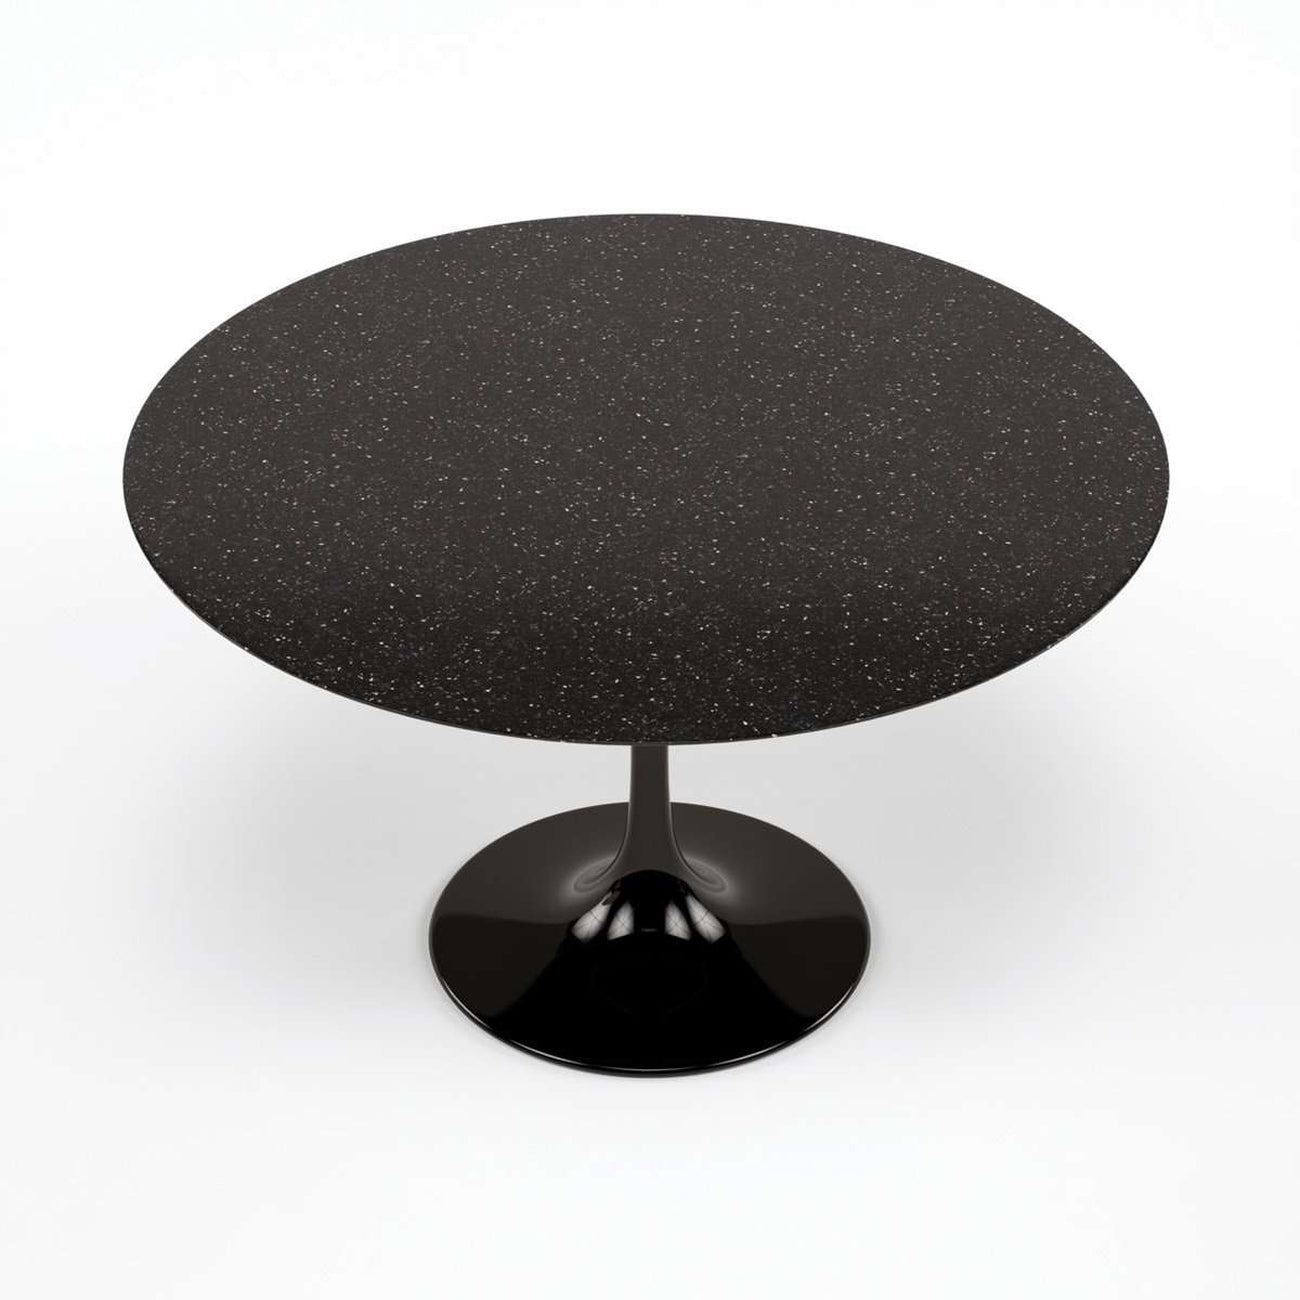 Pedestal Dining Table - 47" Diameter - Black Granite-France & Son-RT335RBLACK-Dining Tables-5-France and Son